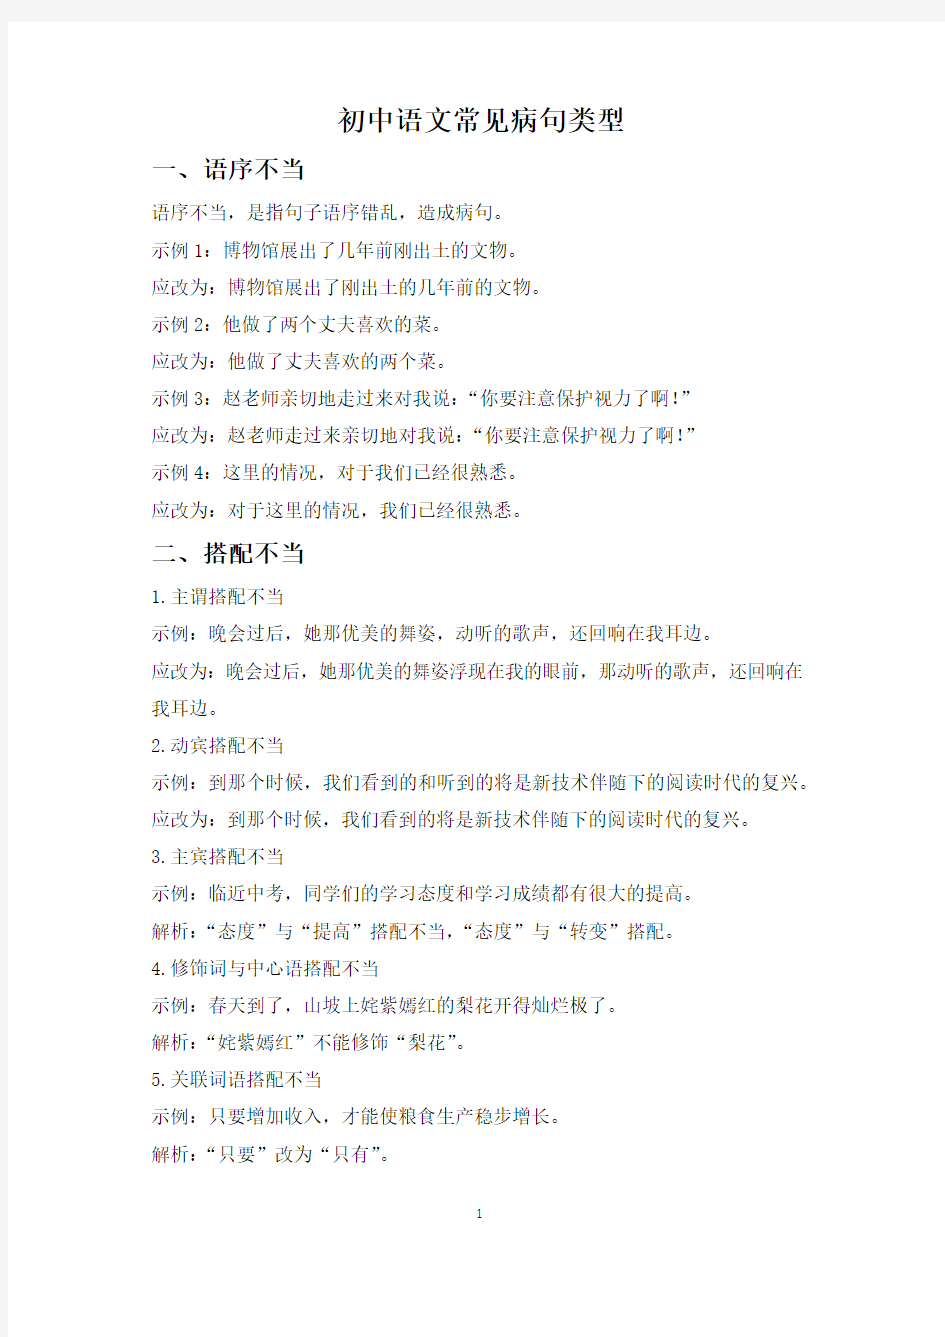 【精选】初中语文《修改病句》常见病句类型、修改技巧汇总